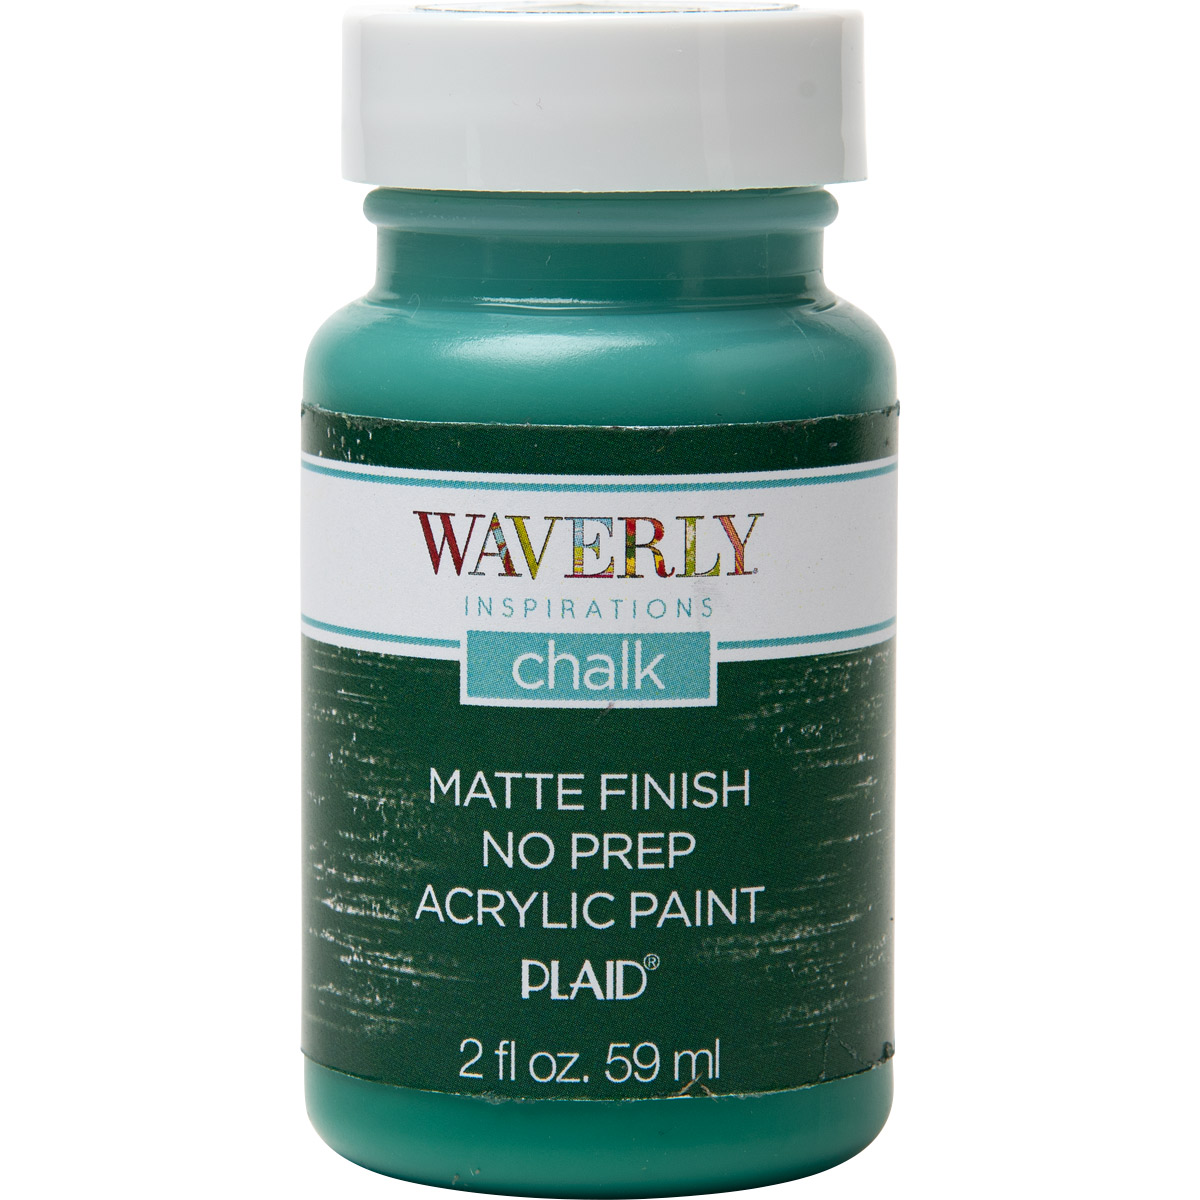 Waverly ® Inspirations Chalk Finish Acrylic Paint - Malachite, 2 oz. - 44632E